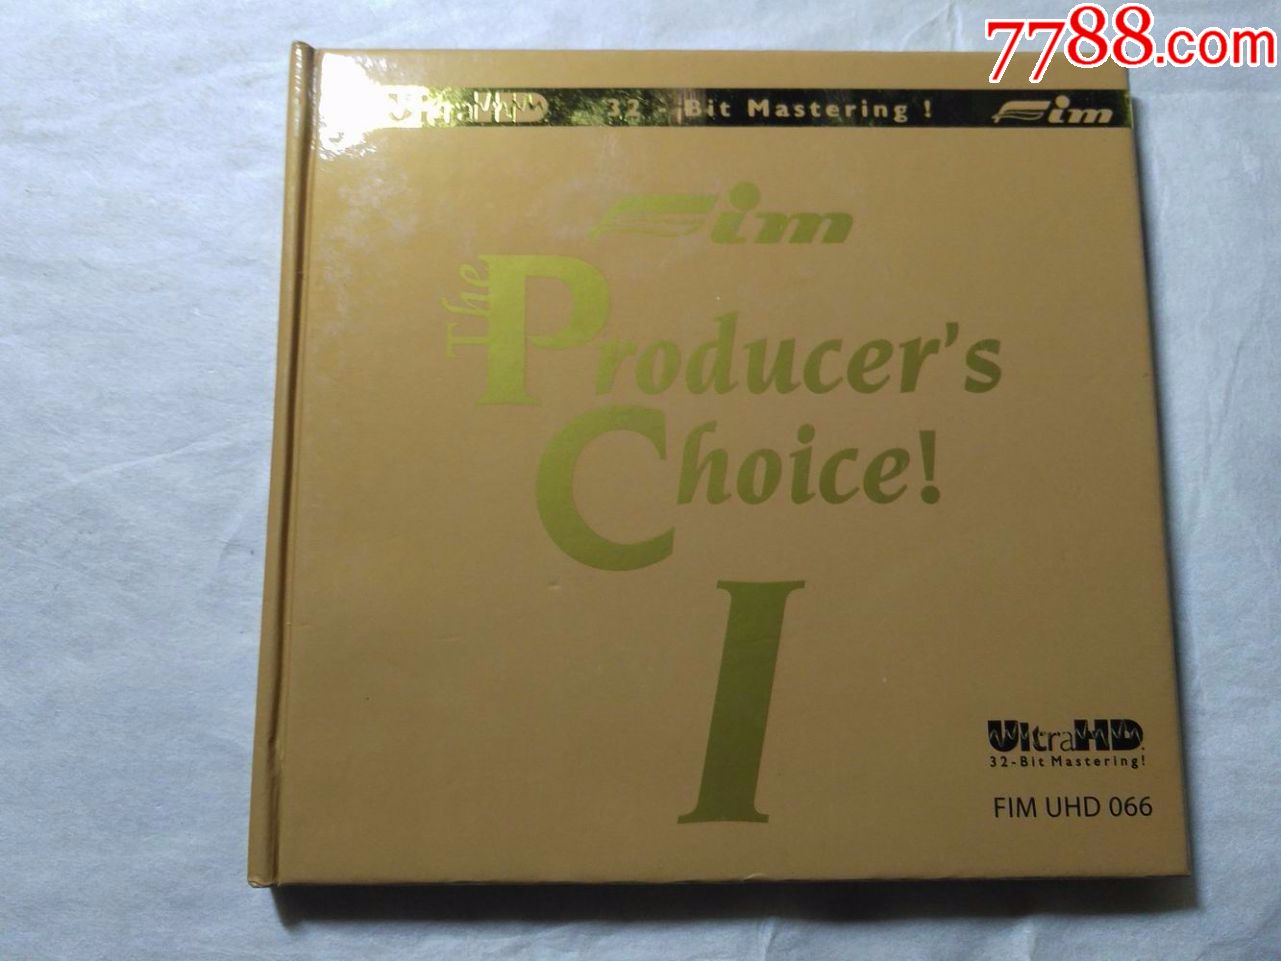 CD---TH.EPRODUCERS.CHOICE1